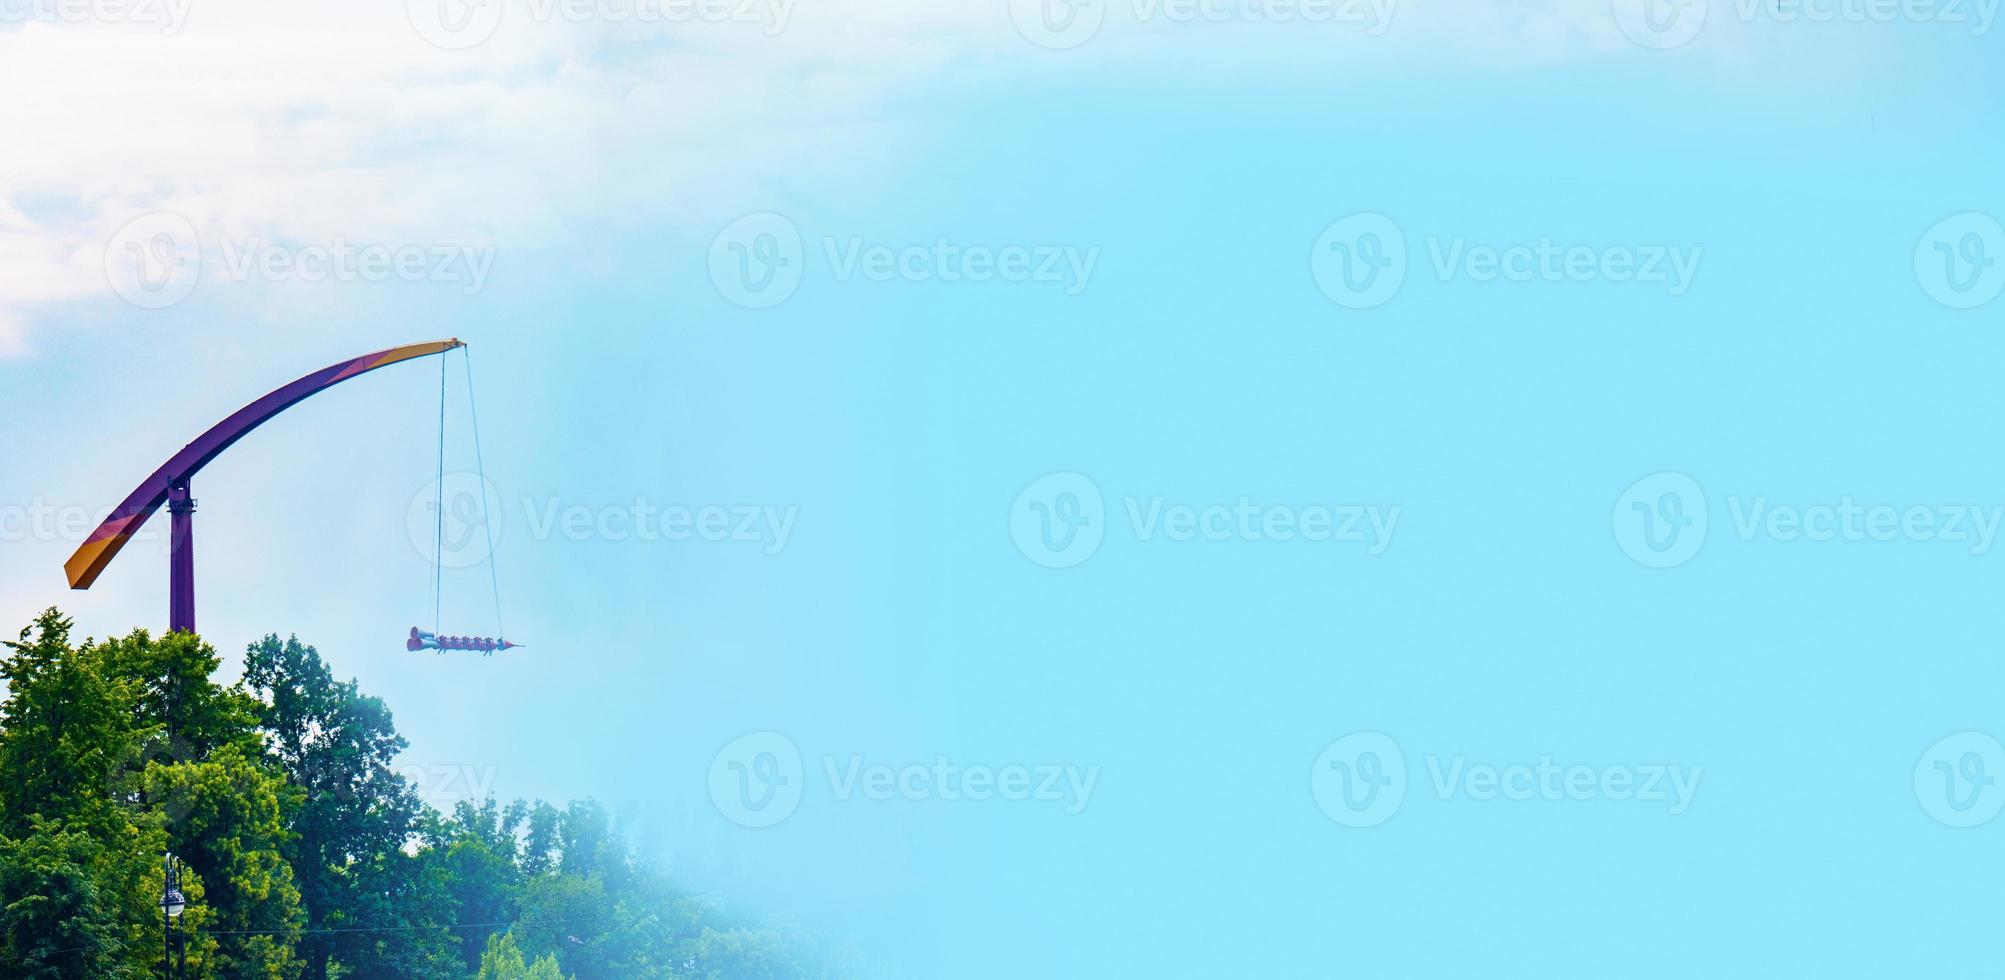 landschap van een pretpark met een attractie met raketritten die boven de boomtoppen tegen een blauwe lucht wordt weergegeven. foto